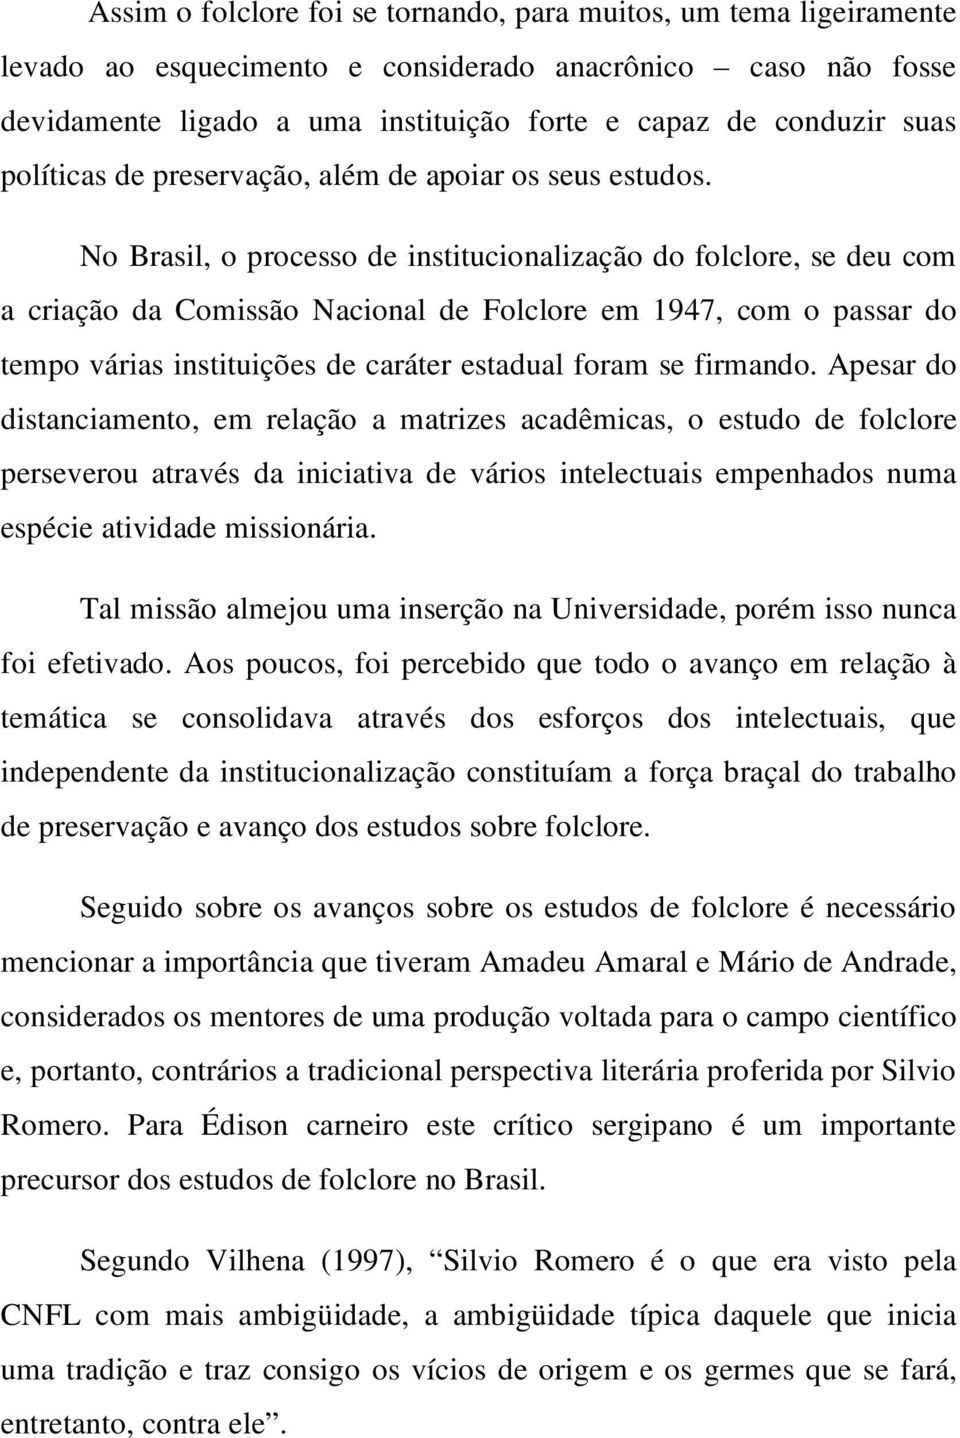 No Brasil, o processo de institucionalização do folclore, se deu com a criação da Comissão Nacional de Folclore em 1947, com o passar do tempo várias instituições de caráter estadual foram se